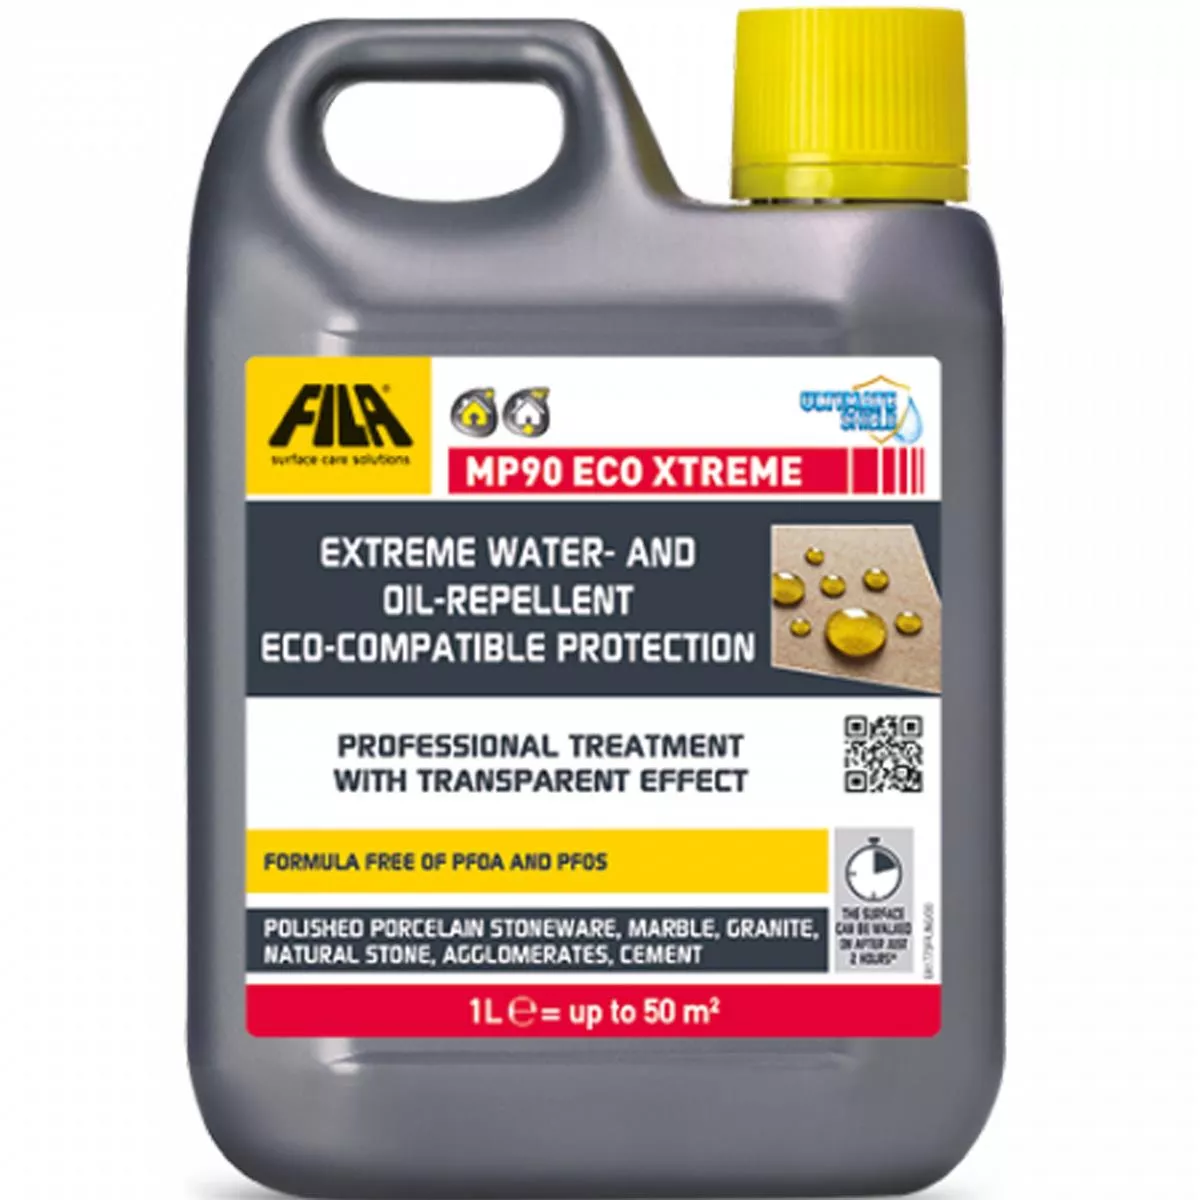 Fila MP90 ECO XTREME Repelente al agua y aceite Protección extrema 1 L